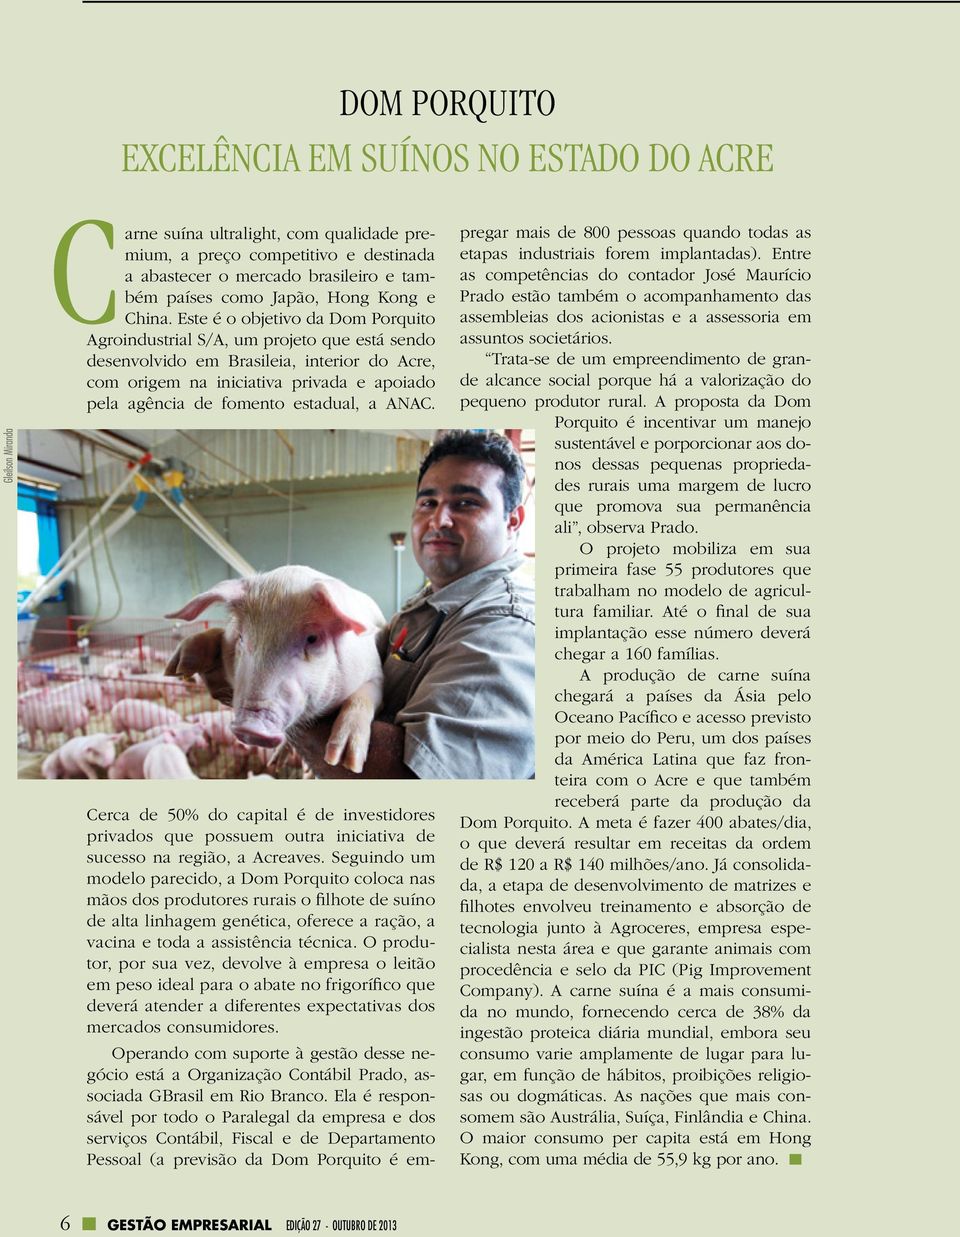 Este é o objetivo da Dom Porquito Agroindustrial S/A, um projeto que está sendo desenvolvido em Brasileia, interior do Acre, com origem na iniciativa privada e apoiado pela agência de fomento